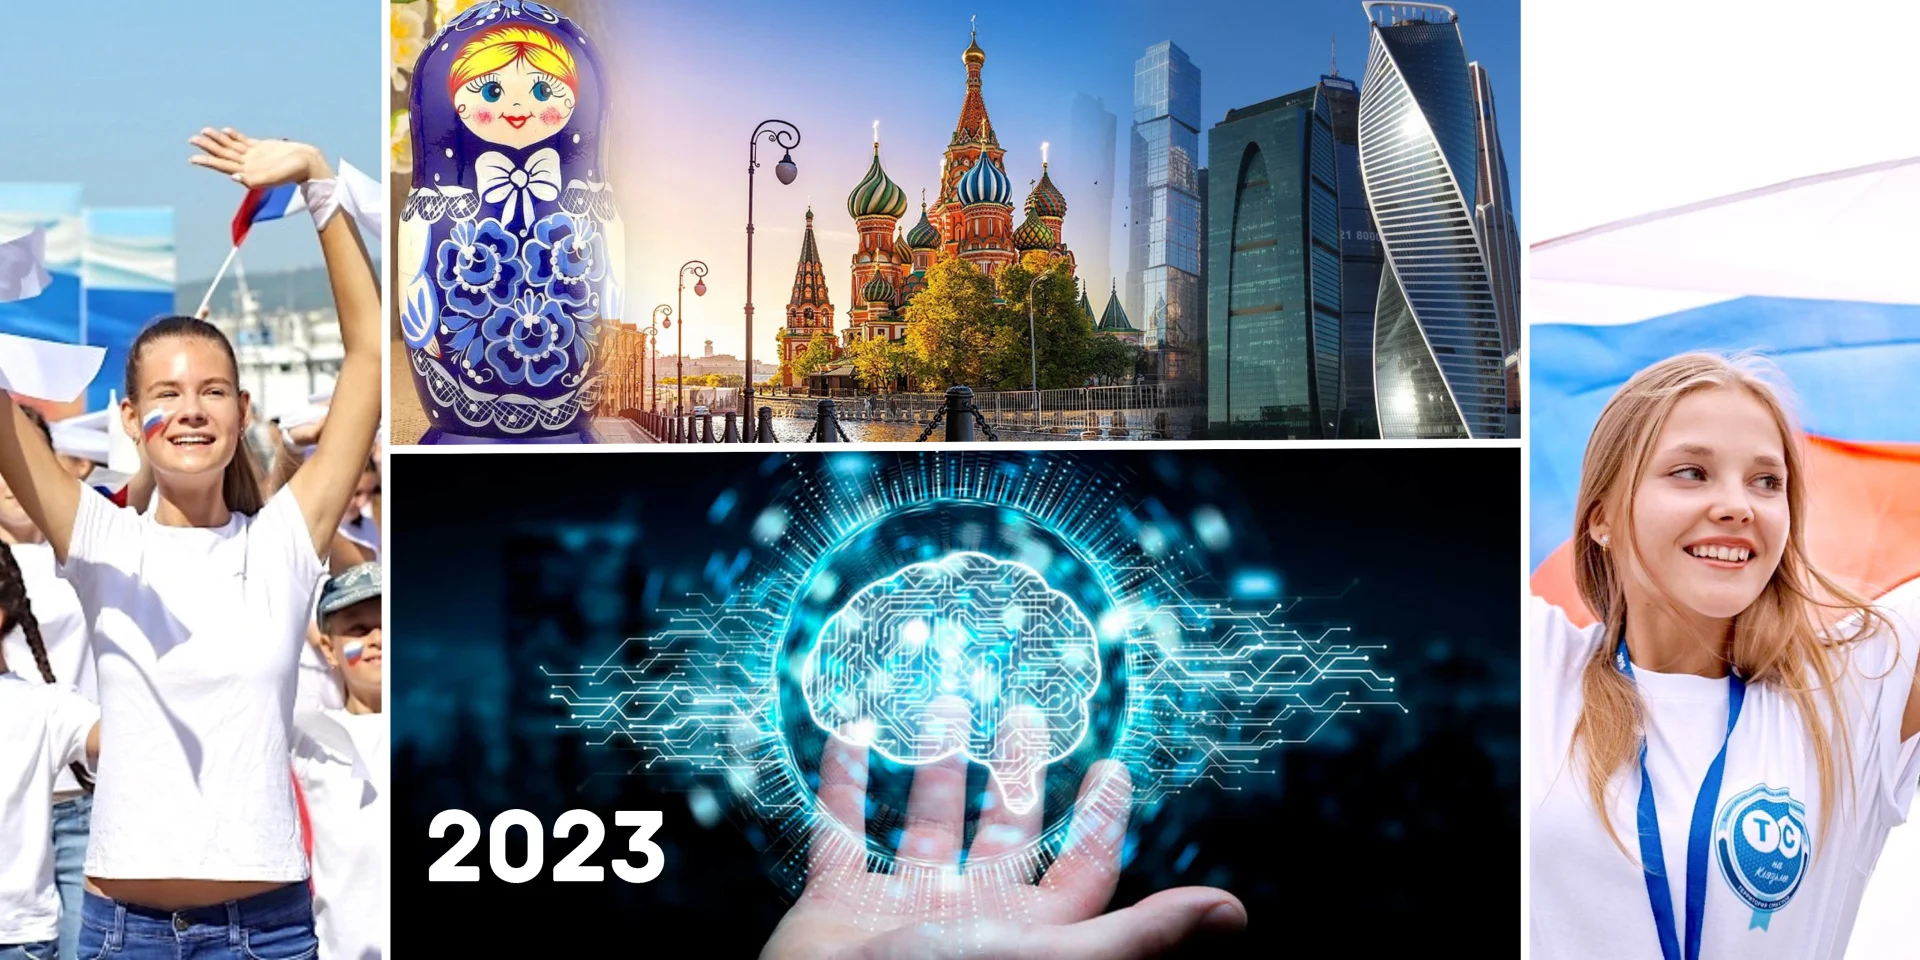 Lo mejor de la ciencia y tecnología rusas : Ya están publicados los cursos de verano en Rusia, online y presencial.